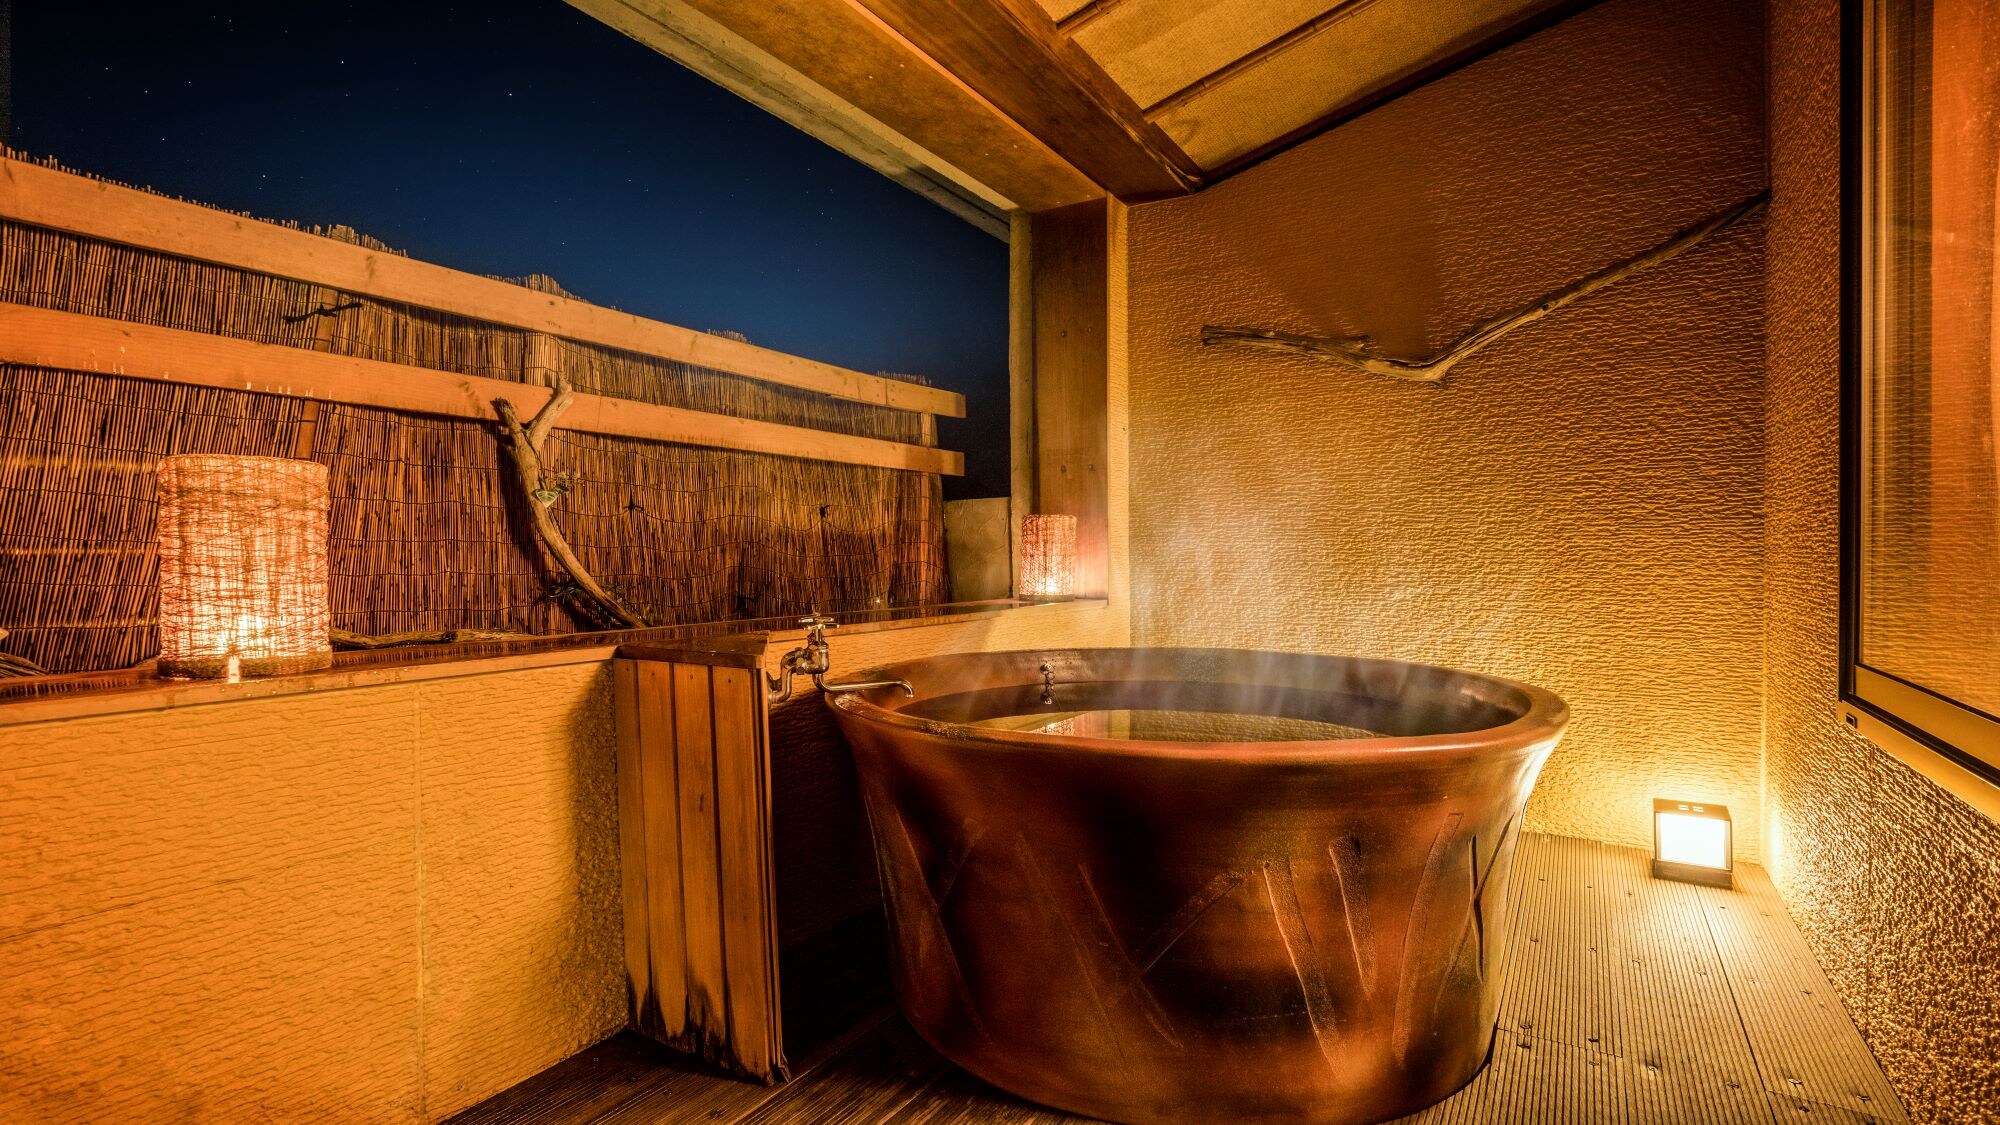 ห้องพักสไตล์ญี่ปุ่น 2 ห้องพร้อมอ่างอาบน้ำโอเพ่นแอร์ที่เหนือกว่า * ตัวอย่างห้องอาบน้ำกลางแจ้งสำหรับแขก